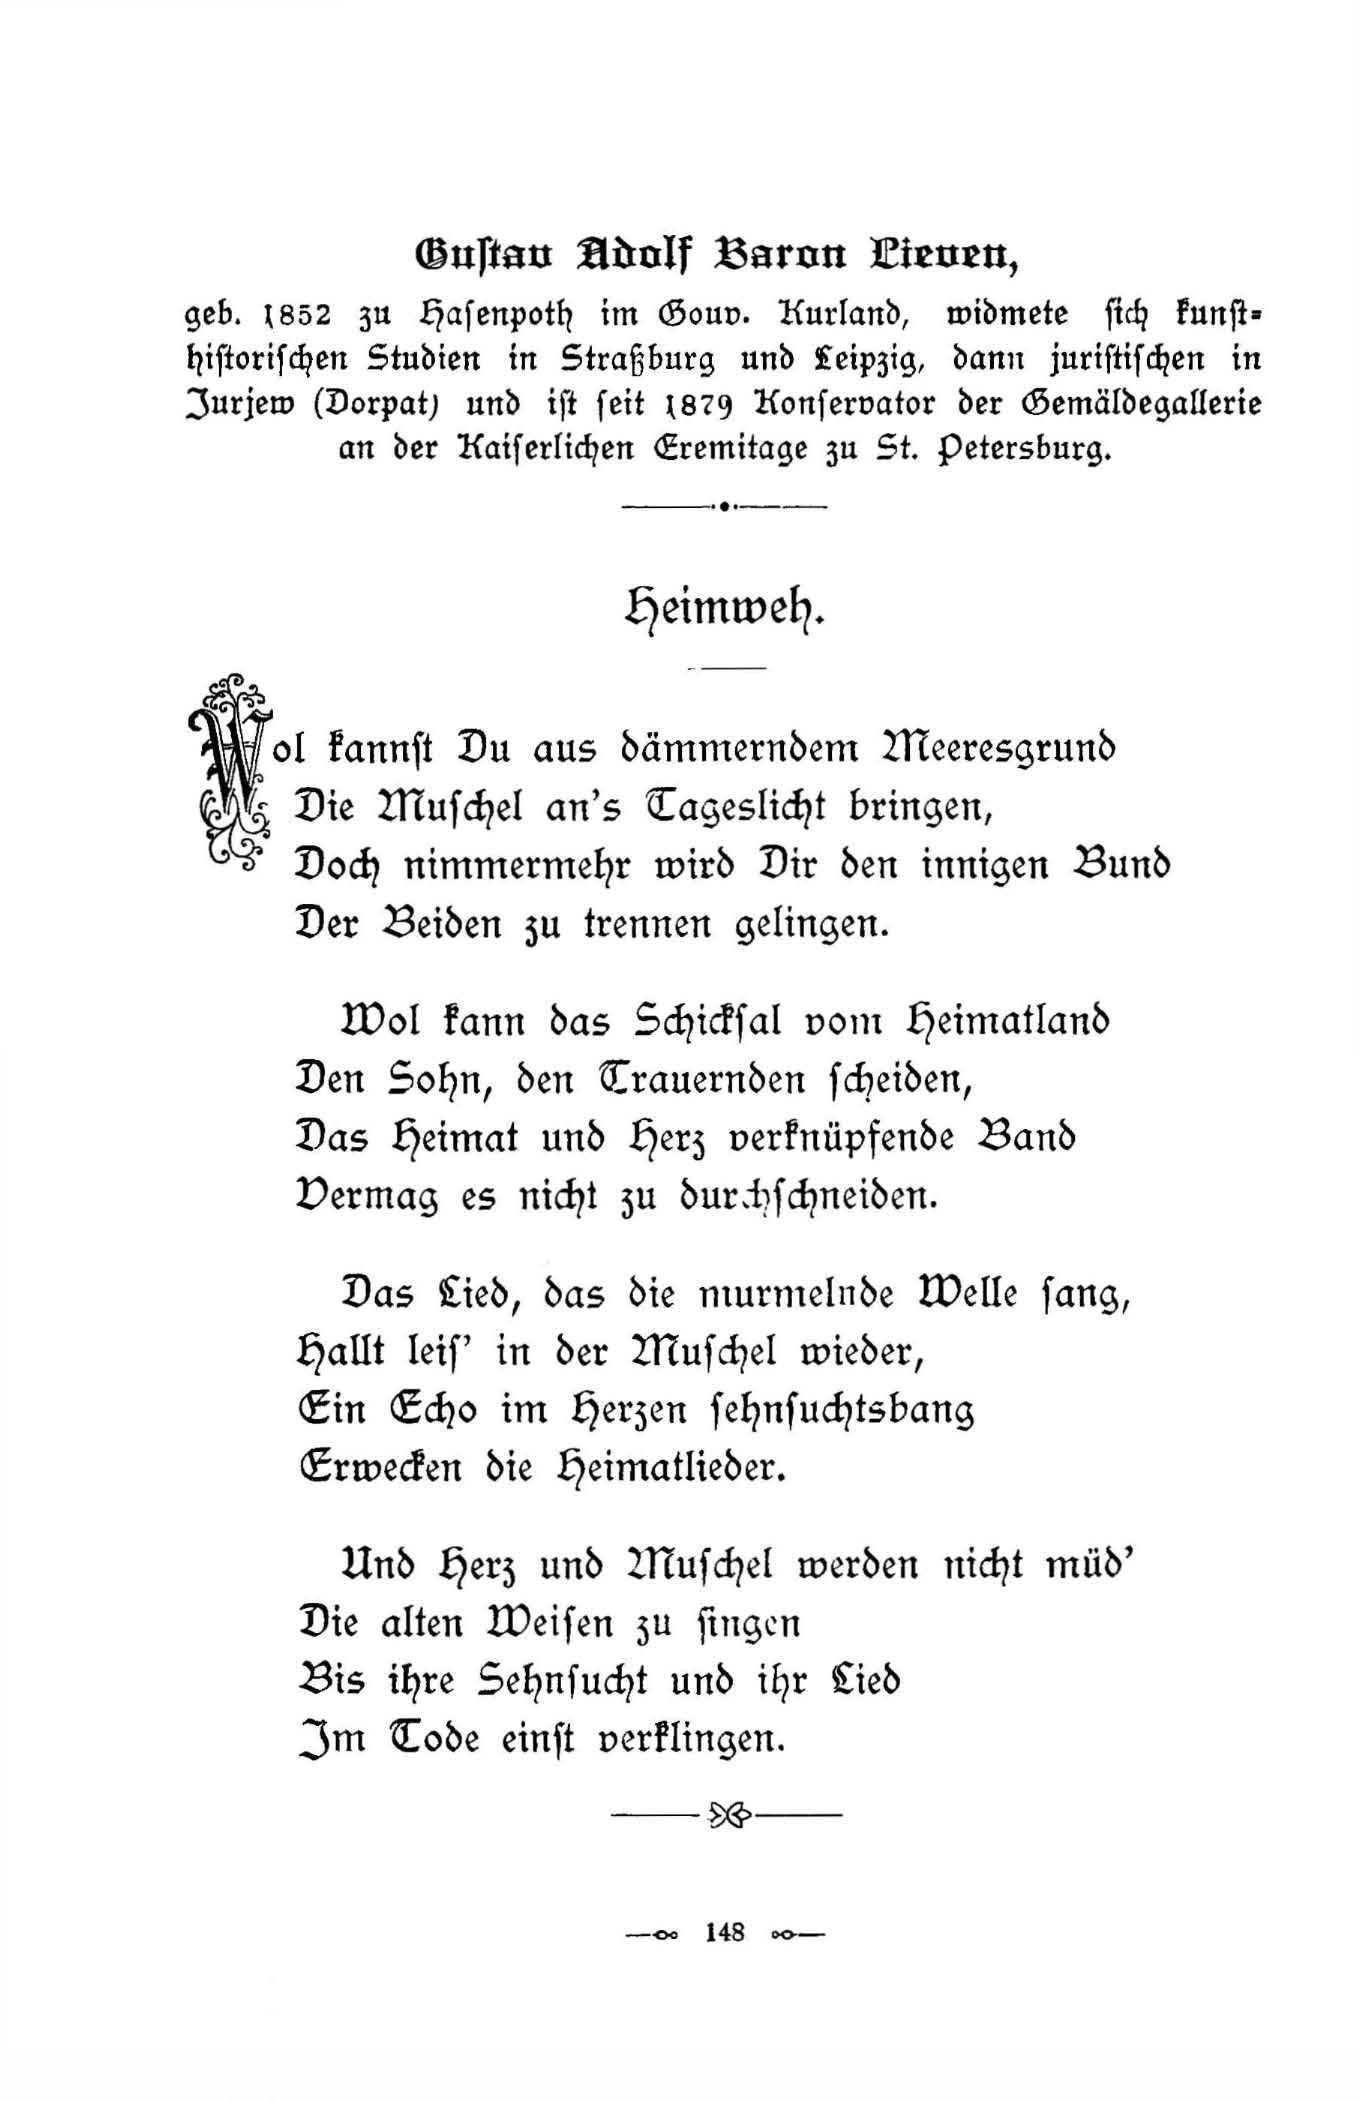 Heimweh (1896) | 1. (148) Main body of text